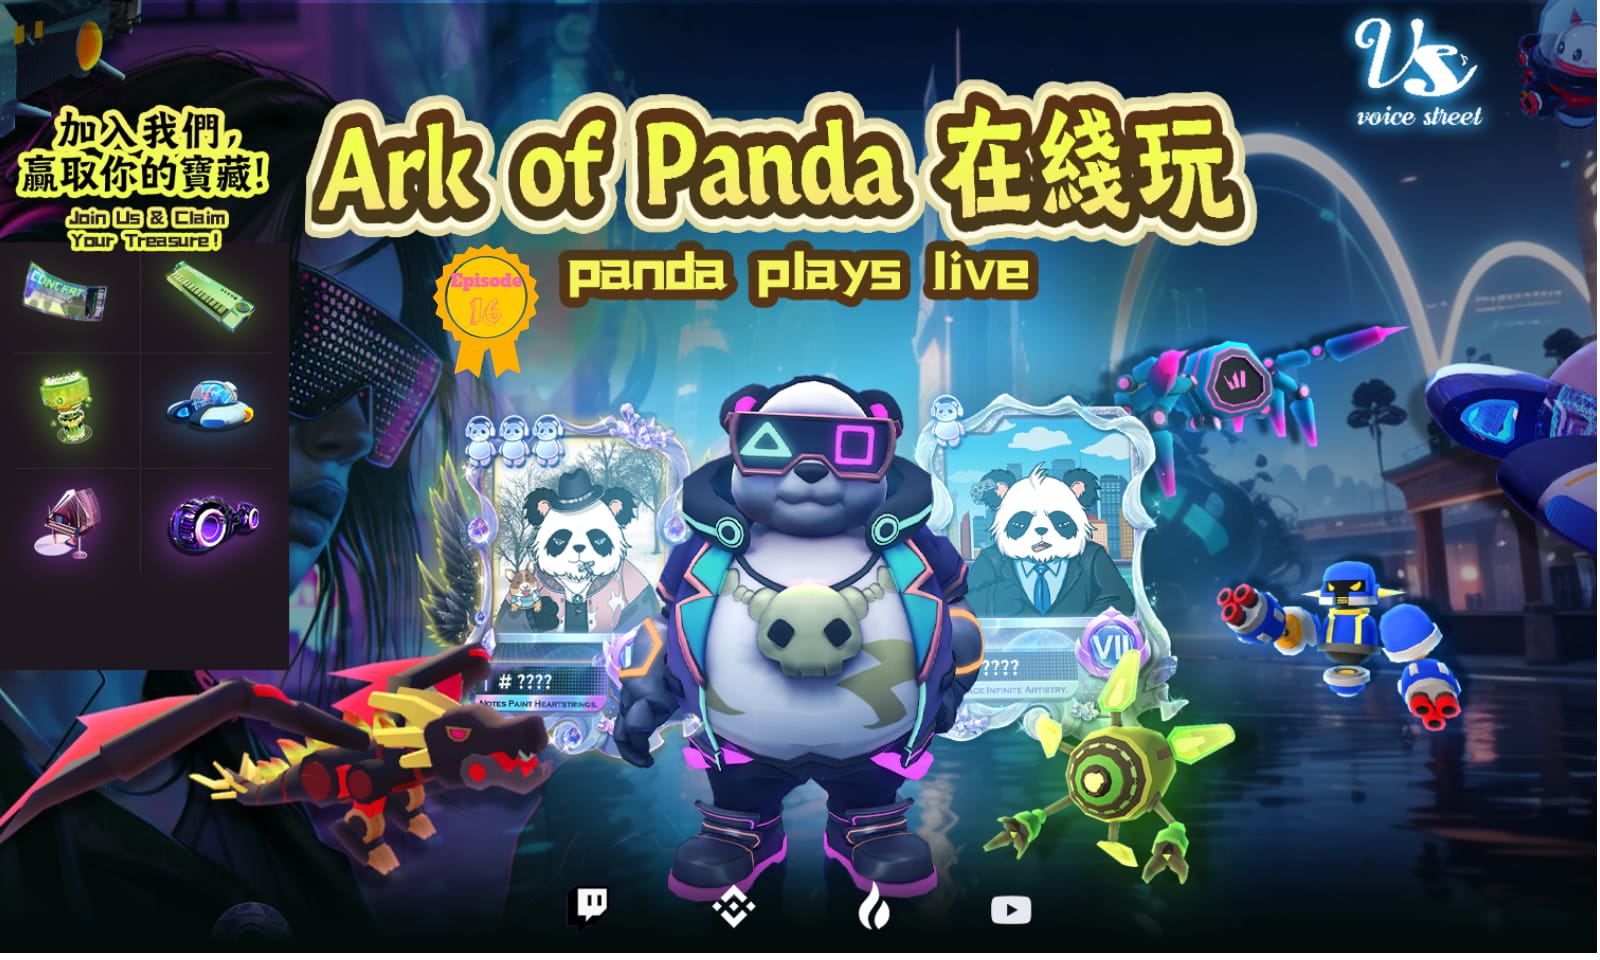 Ark of panda（DPGU） plays live EP16